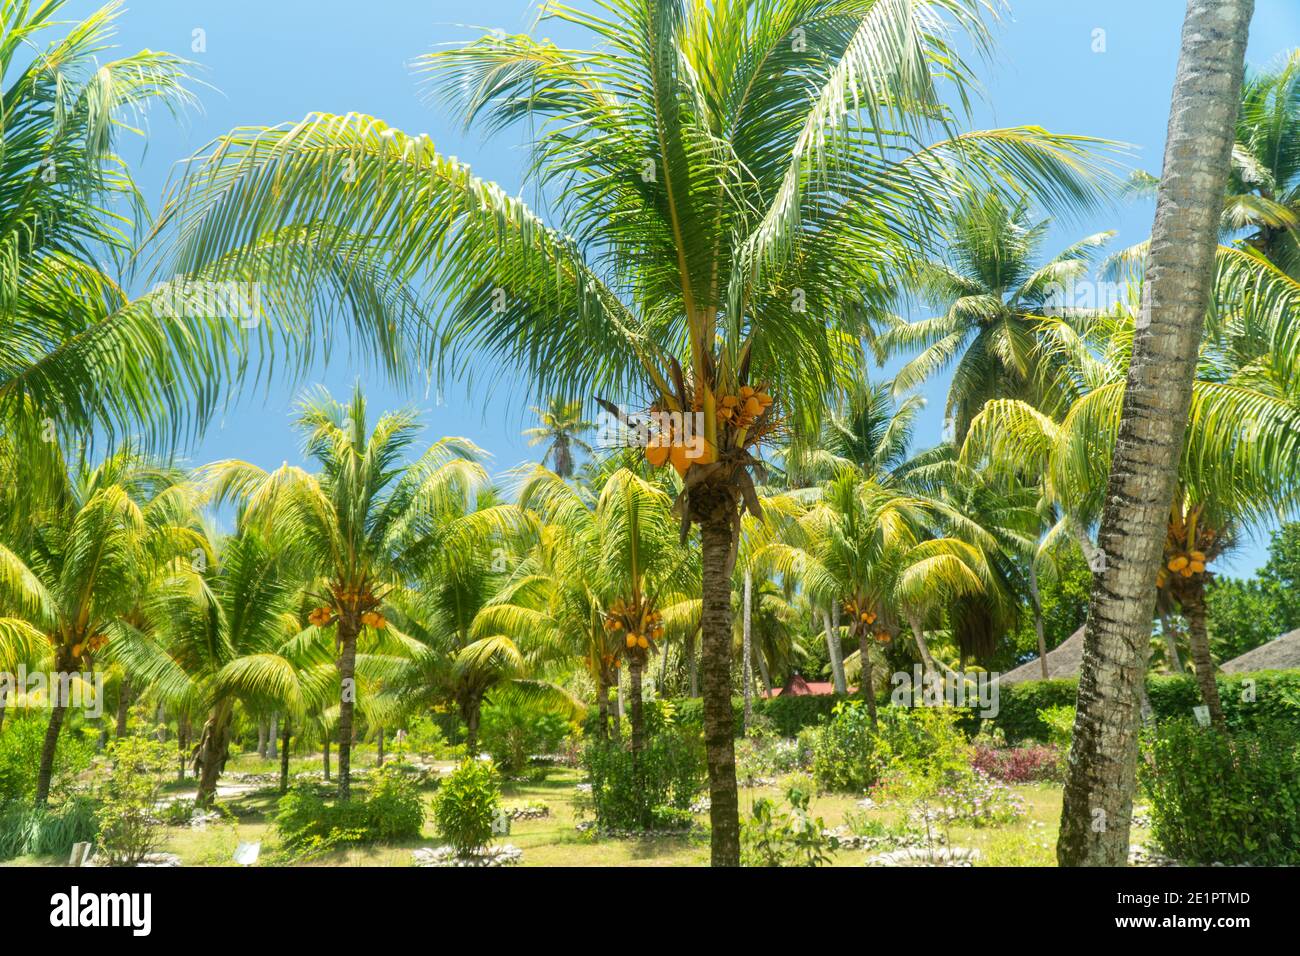 Cocotero o árbol de coco (Cocos nucifera) Foto de stock